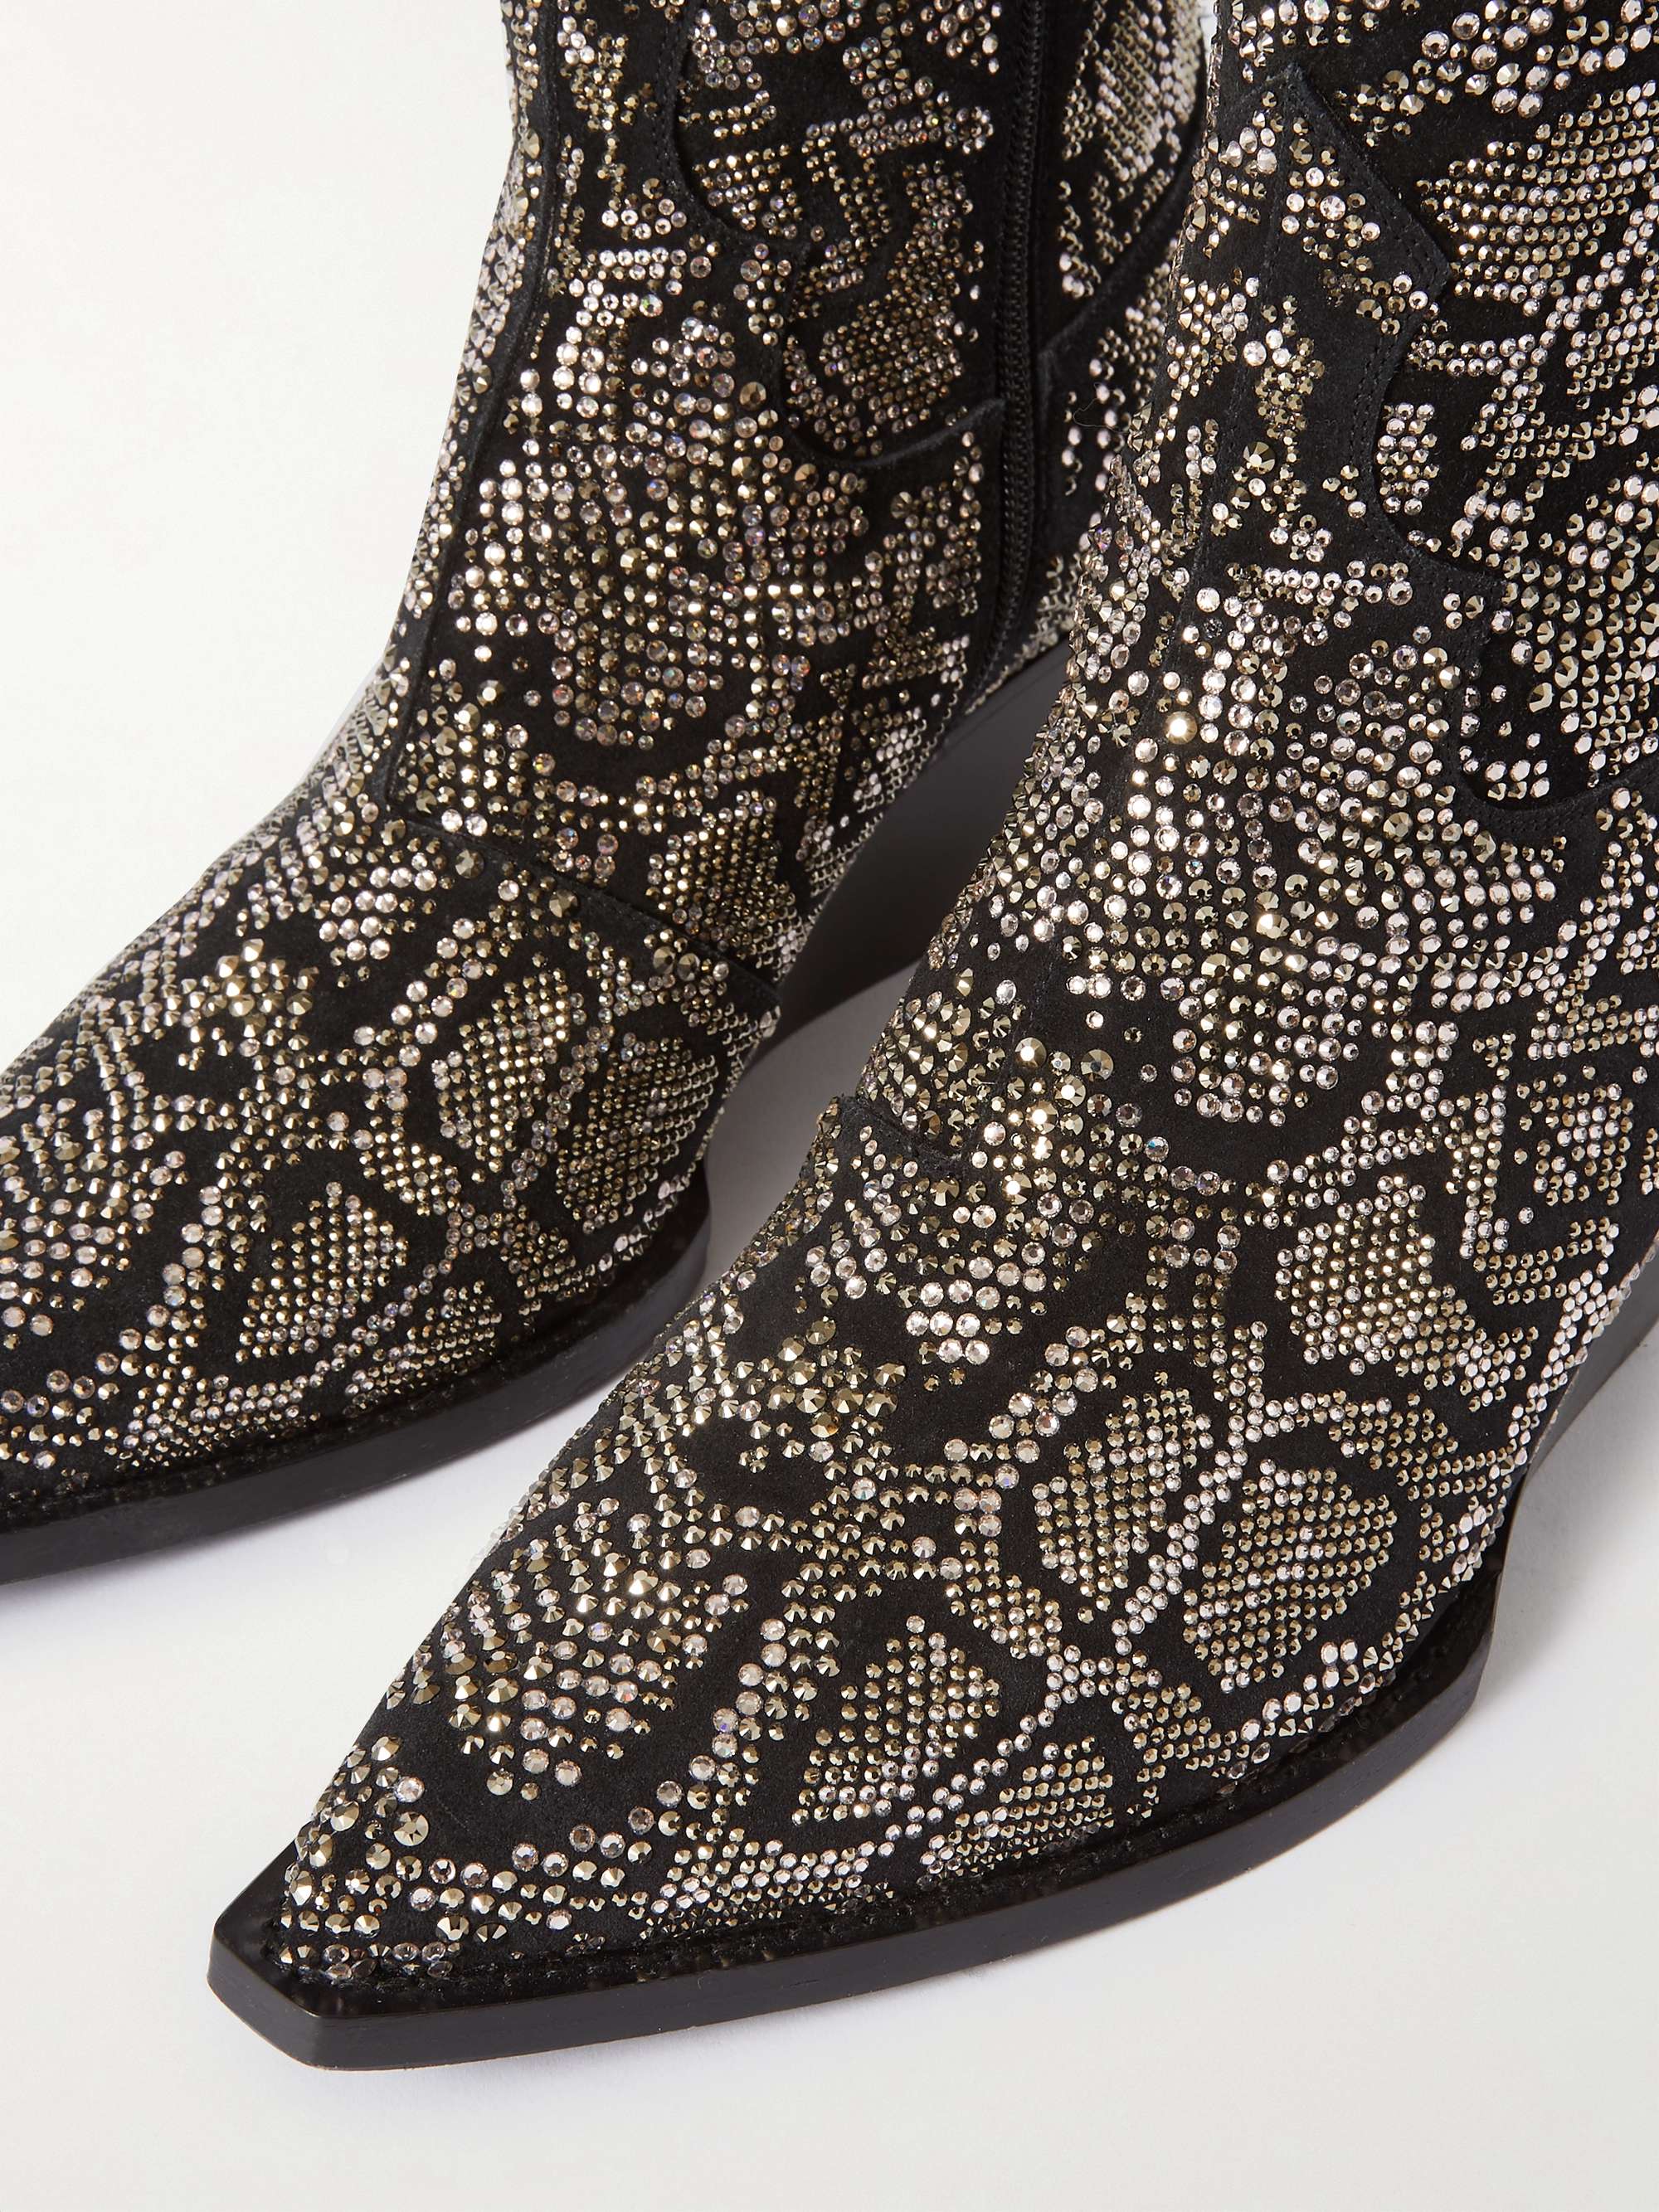 CELINE HOMME Embellished Leather Boots